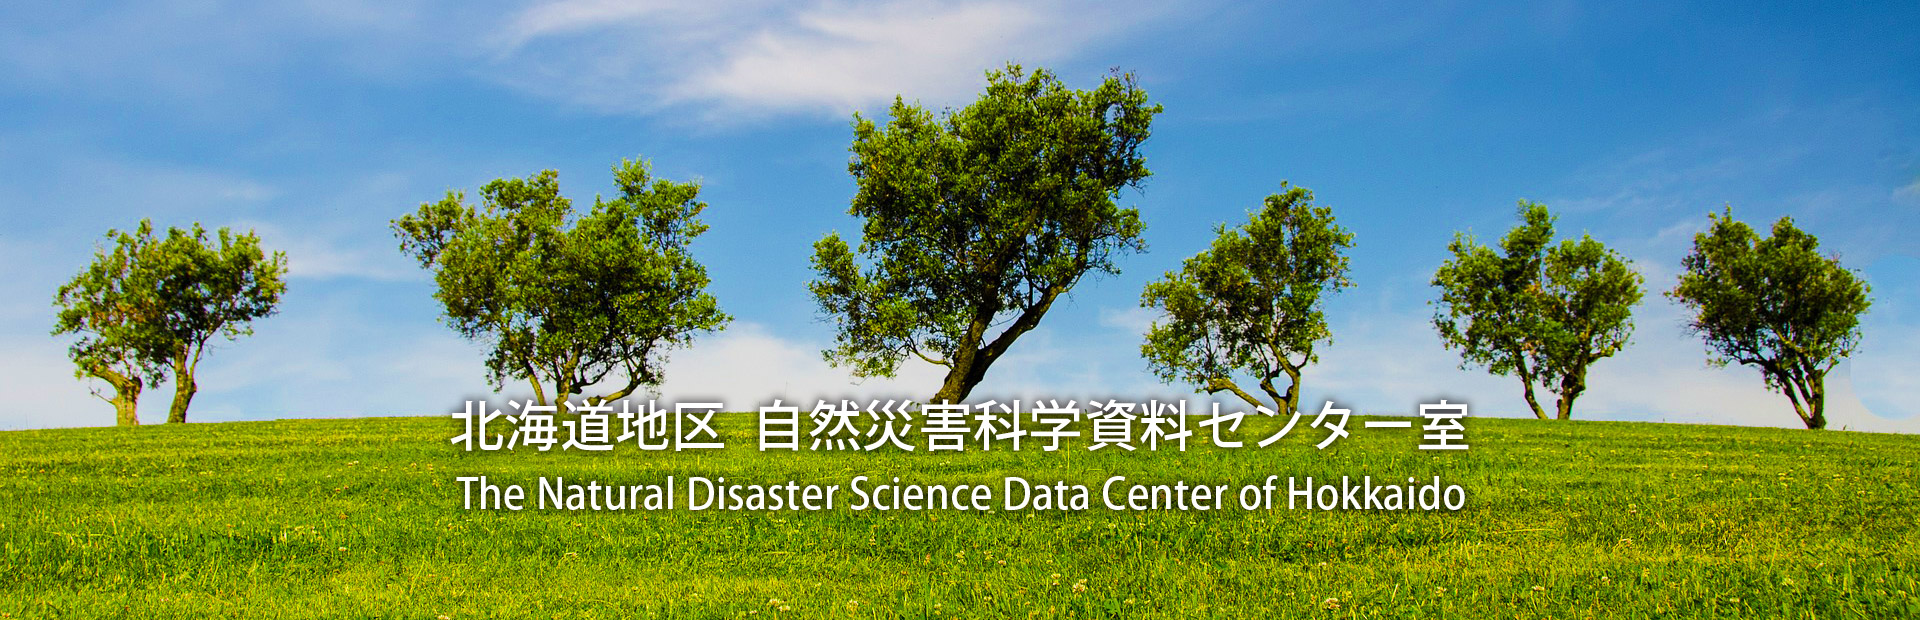 北海道地区自然災害科学資料センター室 The Natural Disaster Science Data Center of Hokkaido